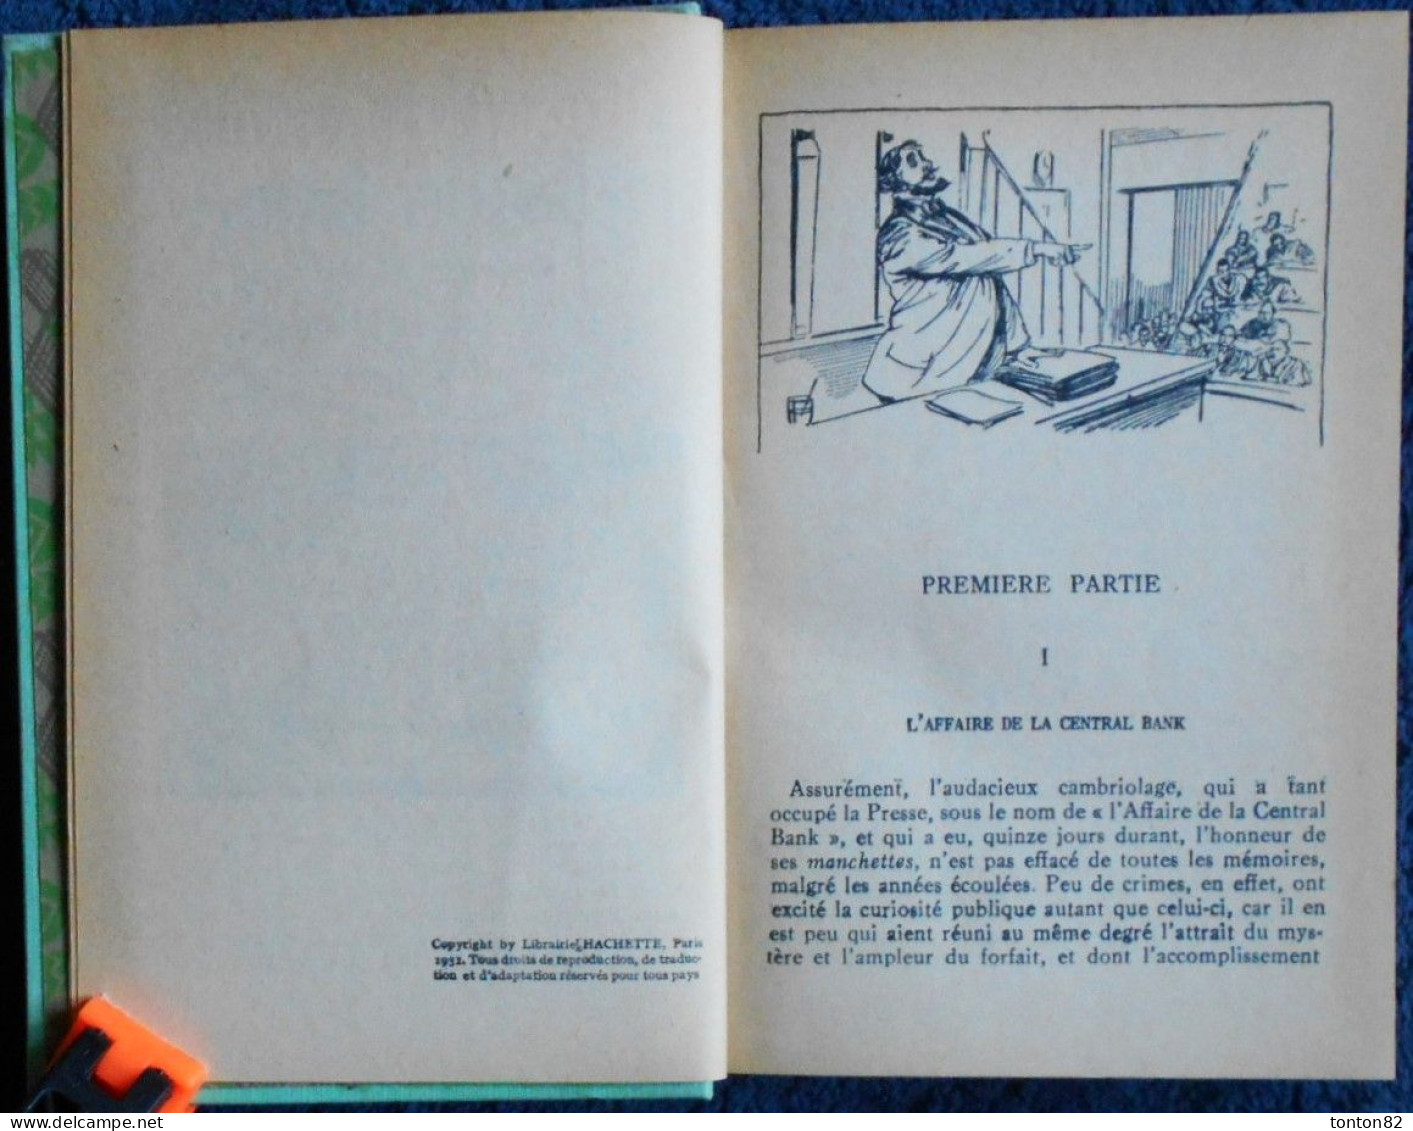 Jules Verne - L'étrange Aventure De La Mission BARSAC - ( Tomes 1 & 2 ) - HACHETTE / Bibliothèque Verte - ( 1941 ) . - Bibliothèque Verte